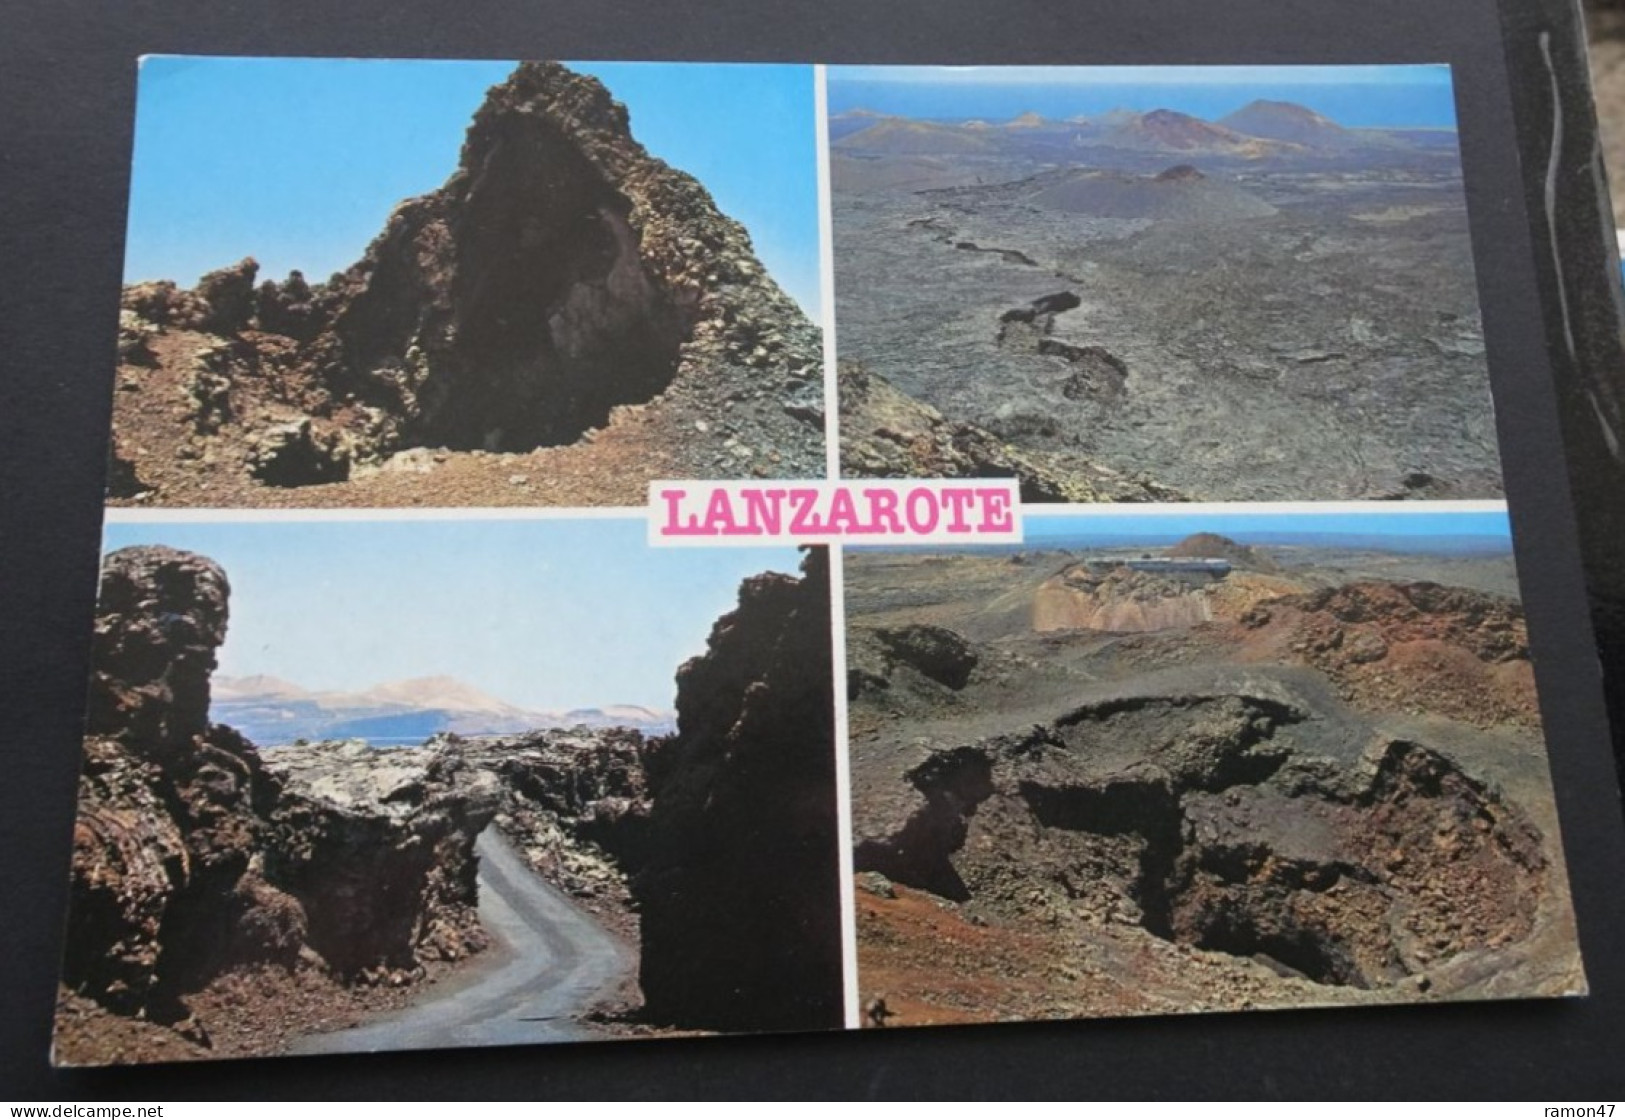 Lanzarote - Montanas De Fuego (Ruta De Los Volcanes) - Comercial Silva, Lanzarote - # 20179 - Lanzarote